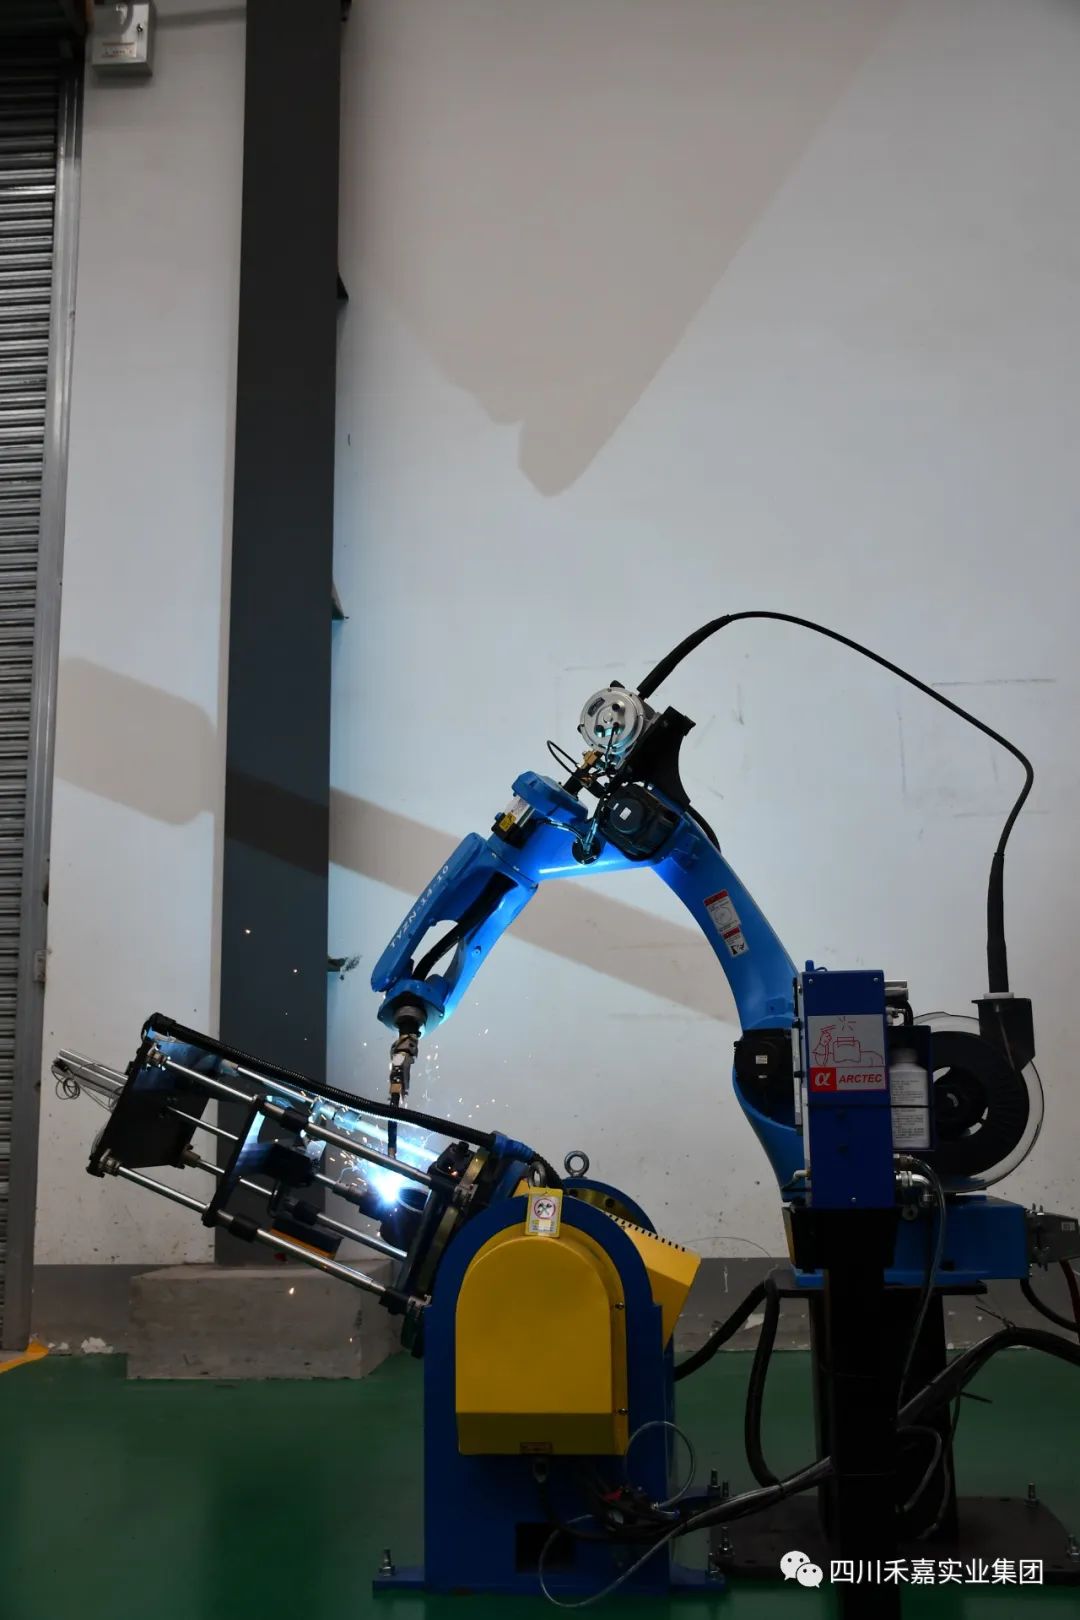 公司新引进的工业焊接机器人